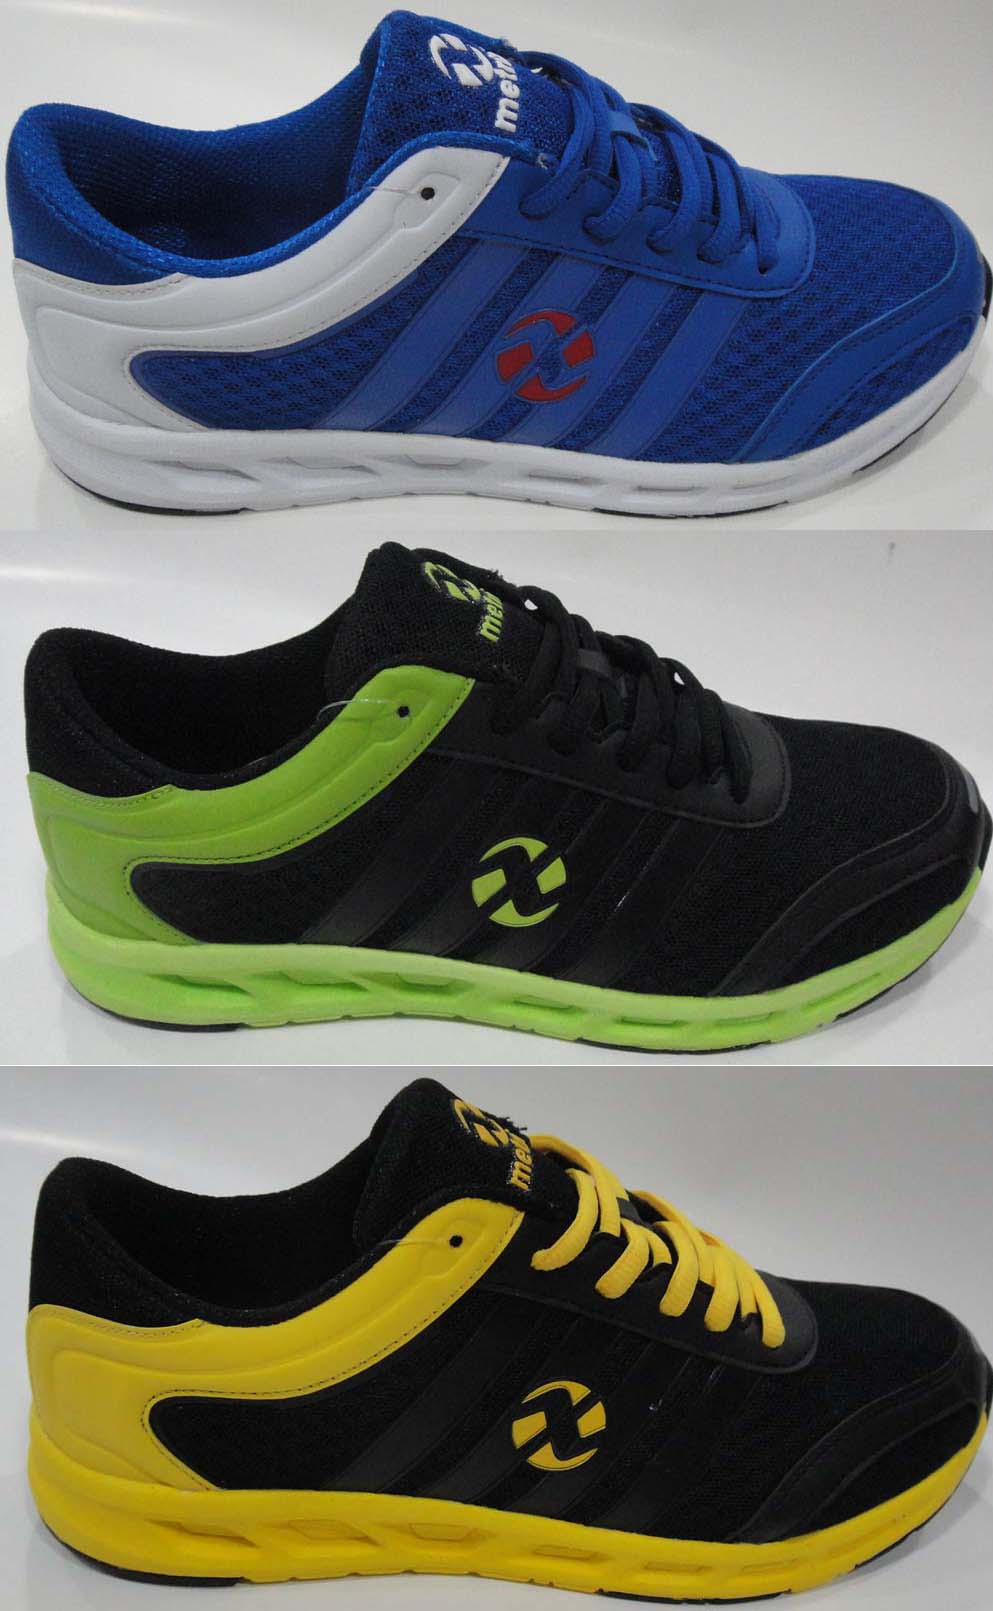 Supplier of Sports Footwear, China by Huikai Footwear